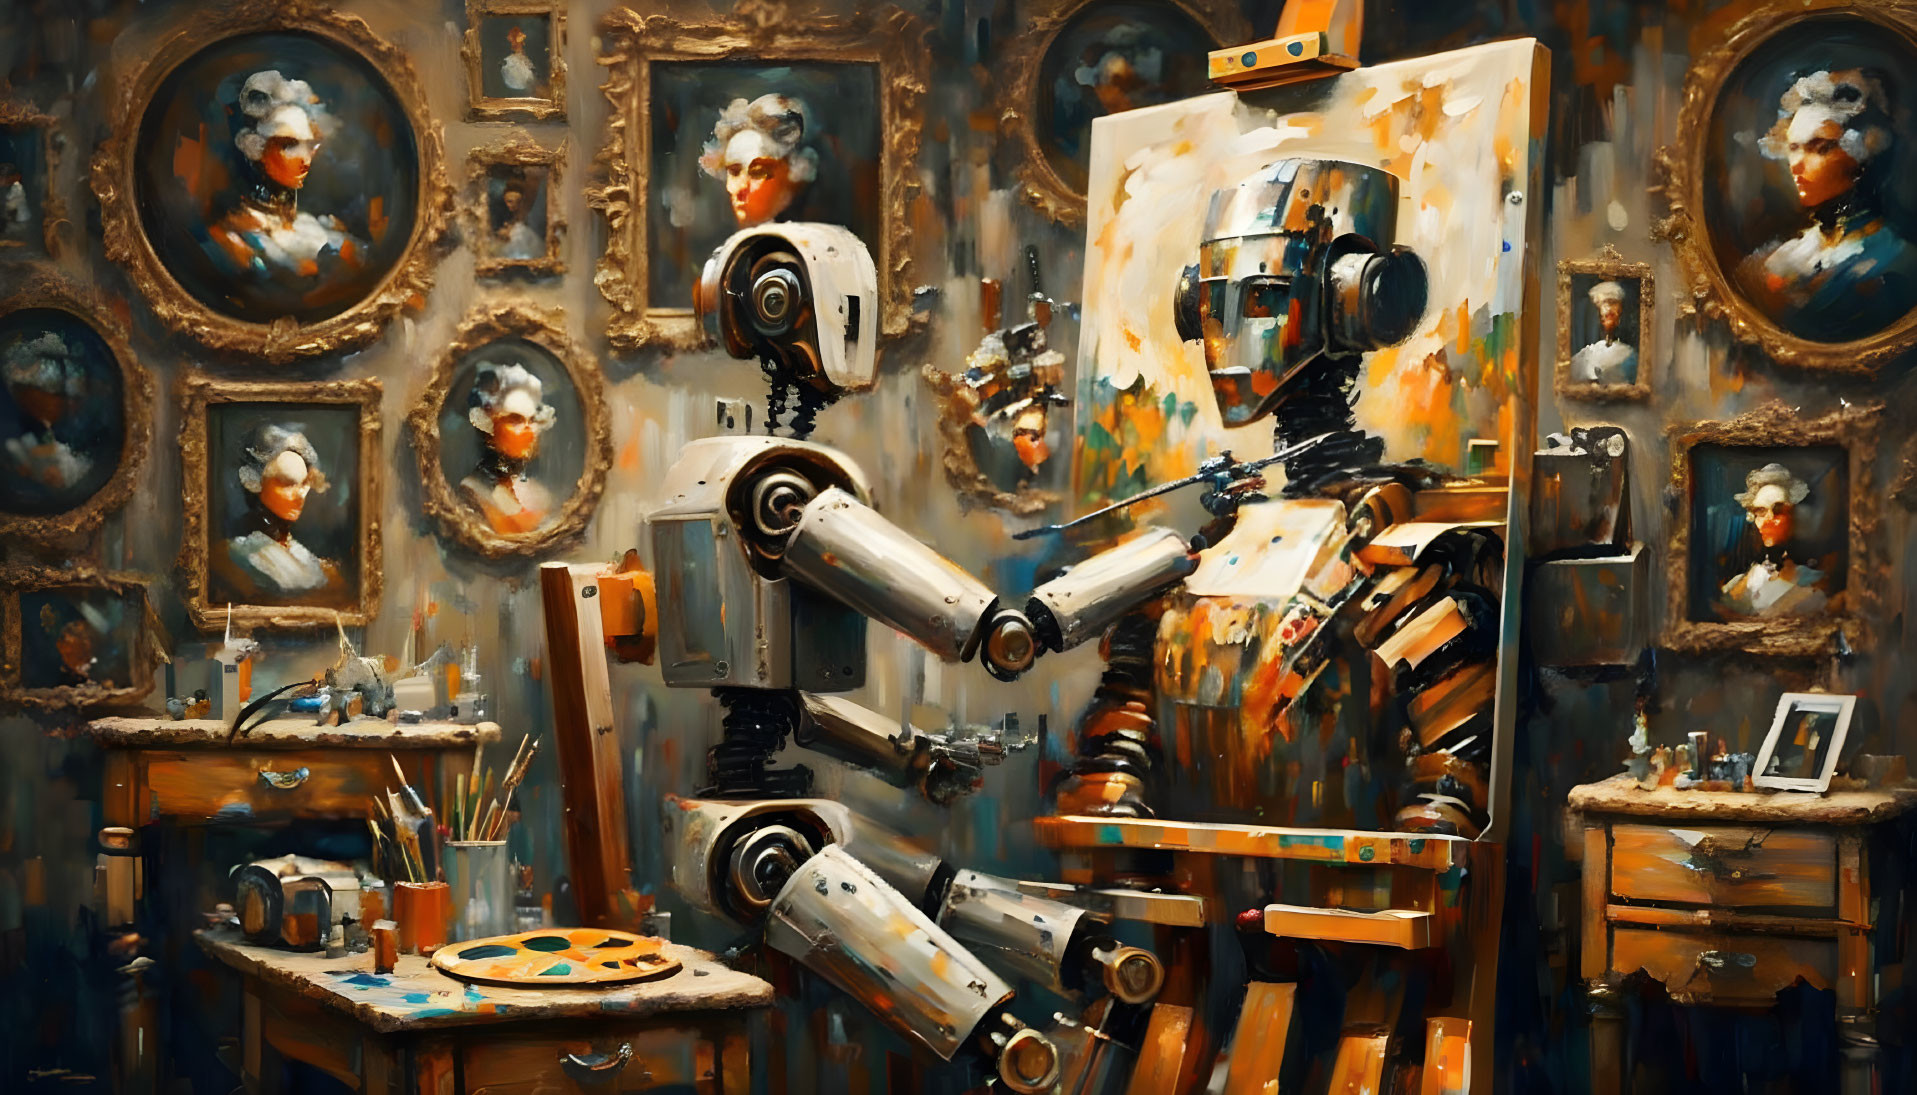 The Portrait Robot